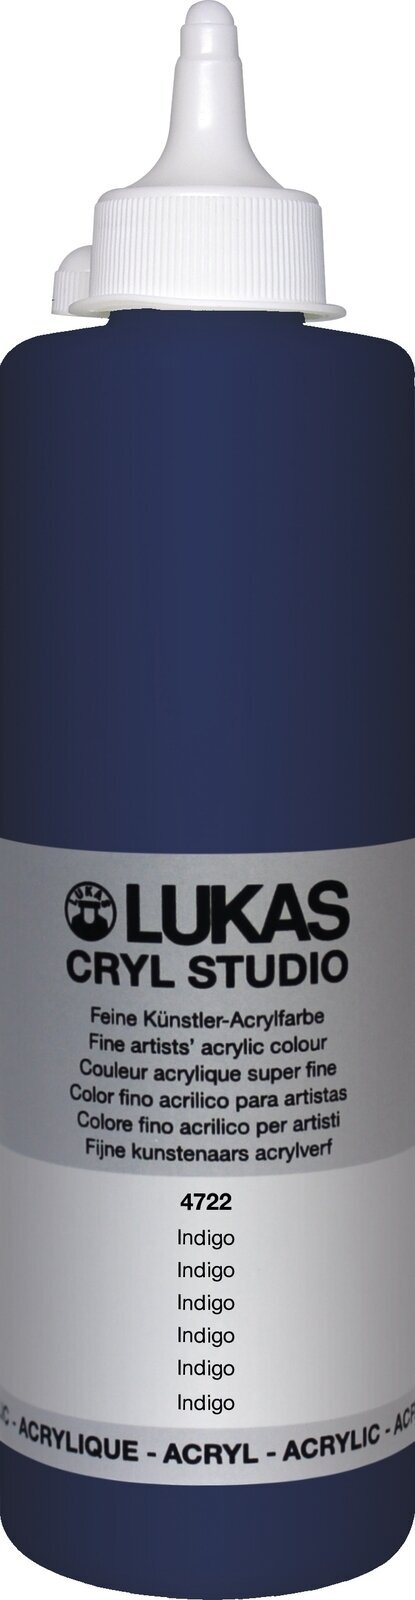 Acrylic Paint Lukas Cryl Studio Acrylic Paint Plastic Bottle Acrylic Paint Indigo 500 ml 1 pc